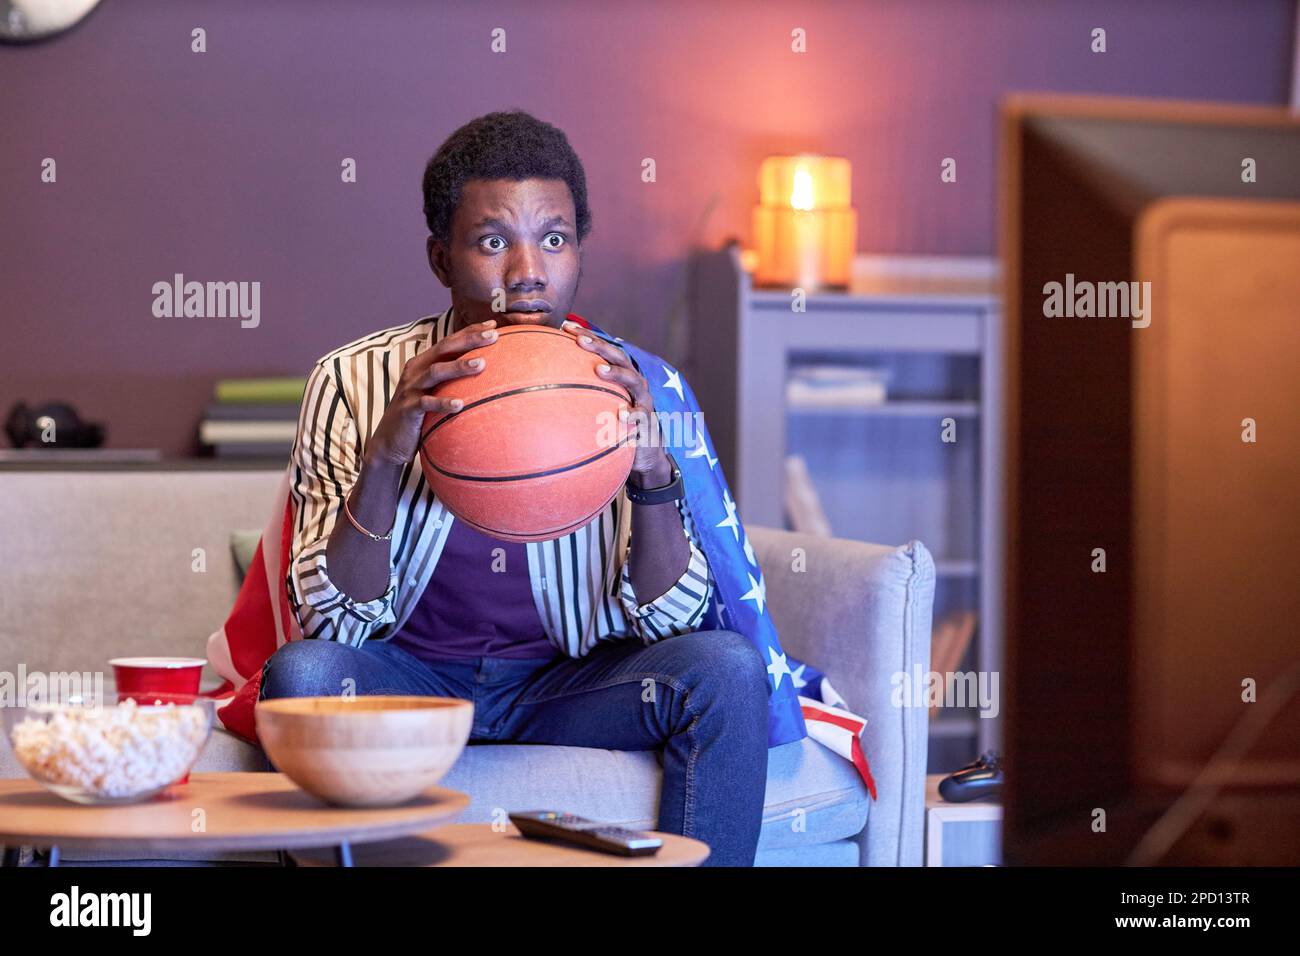 Porträt eines jungen Schwarzen als Sportfan, der zu Hause ein Basketballspiel im Fernsehen sieht und die Flagge der USA in blauem Licht trägt Stockfoto